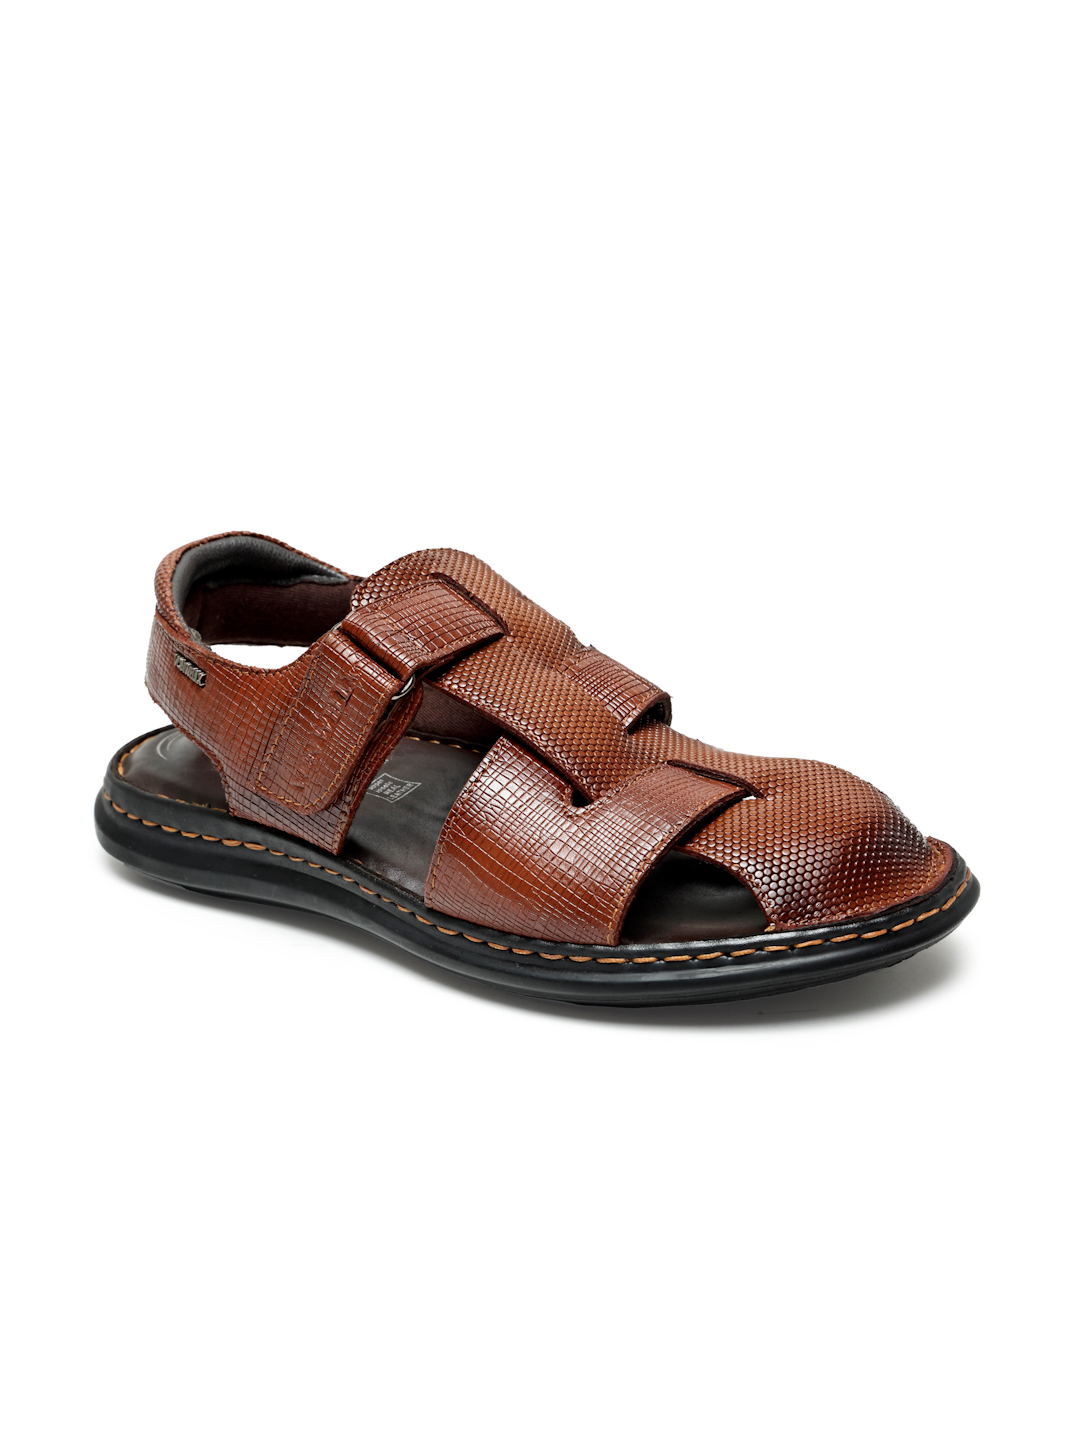 Buy Von Wellx Germany Comfort Men's Tan Sandals Morgen Online in Nagpur